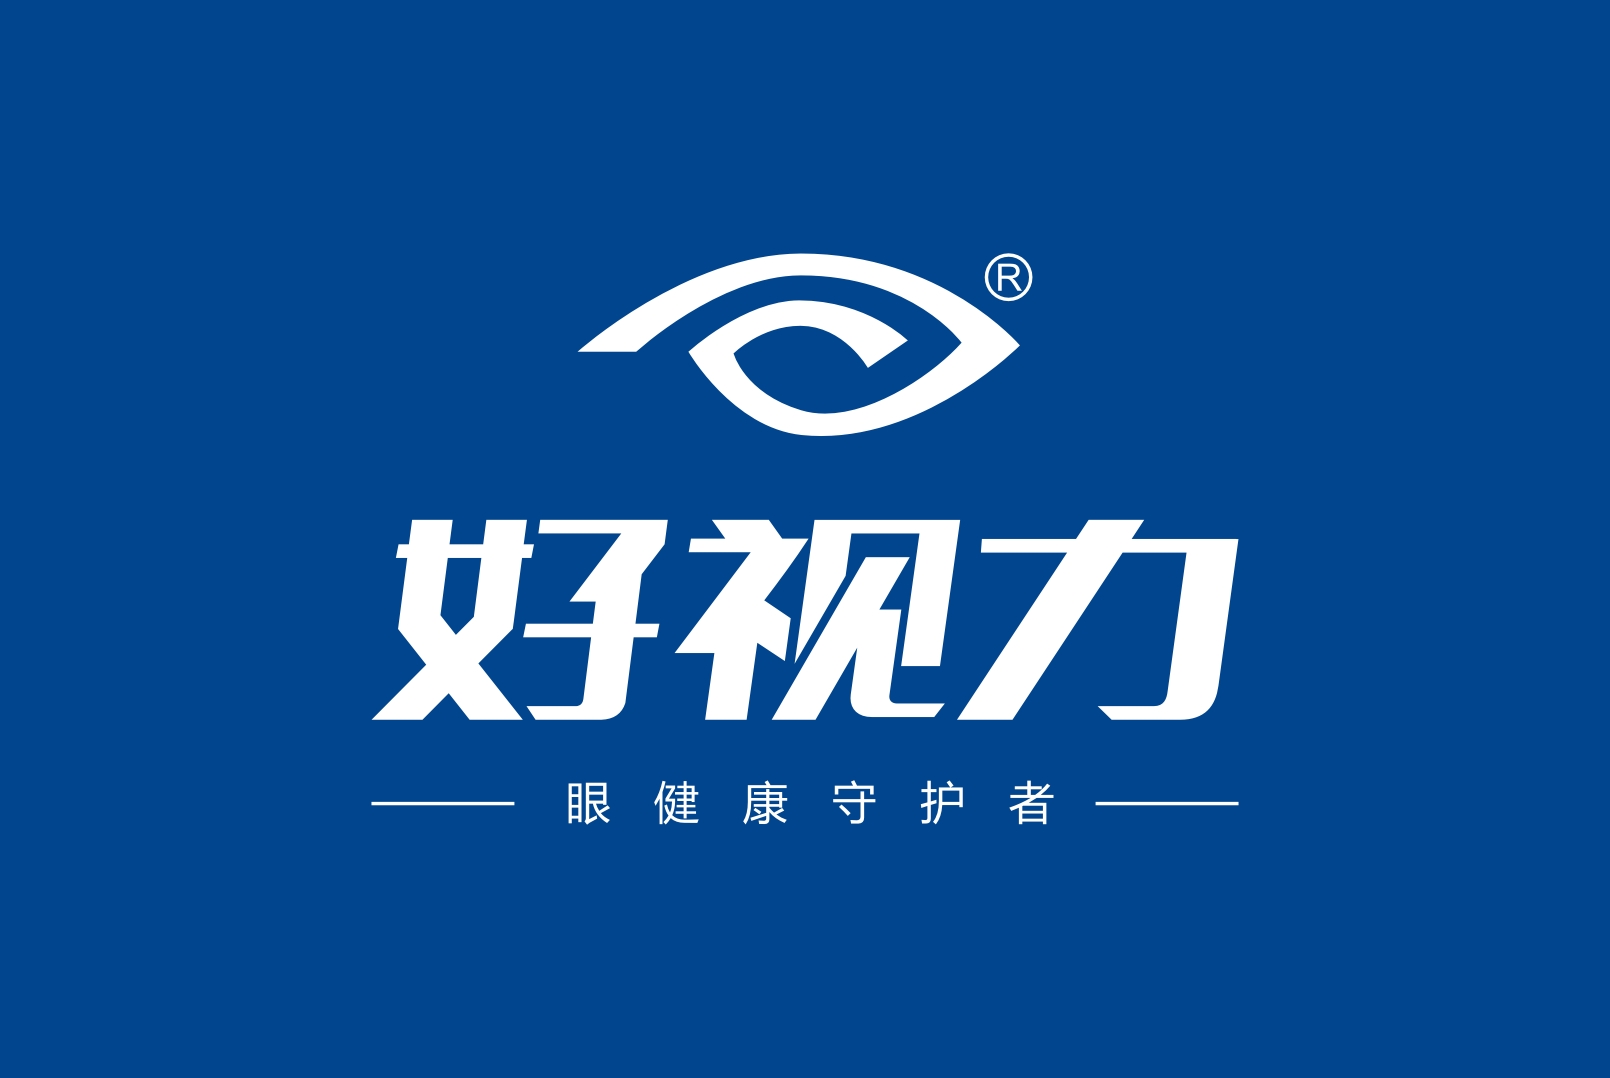 北京好視力科技發展有限公司